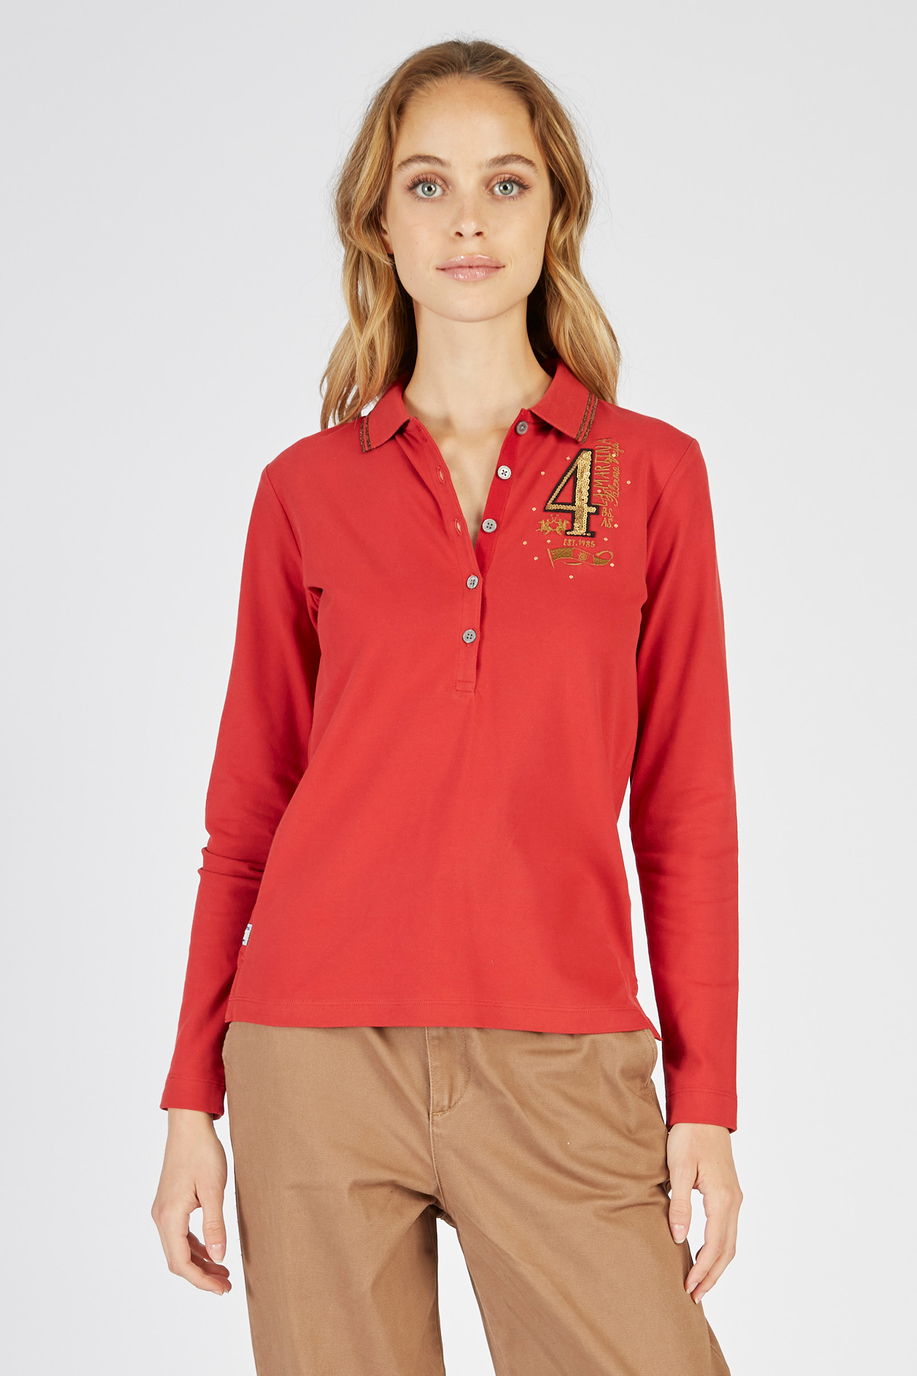 Langarm-Poloshirt Argentina aus elastischer Baumwolle in regulärer Passform für Damen - Damen | La Martina - Official Online Shop